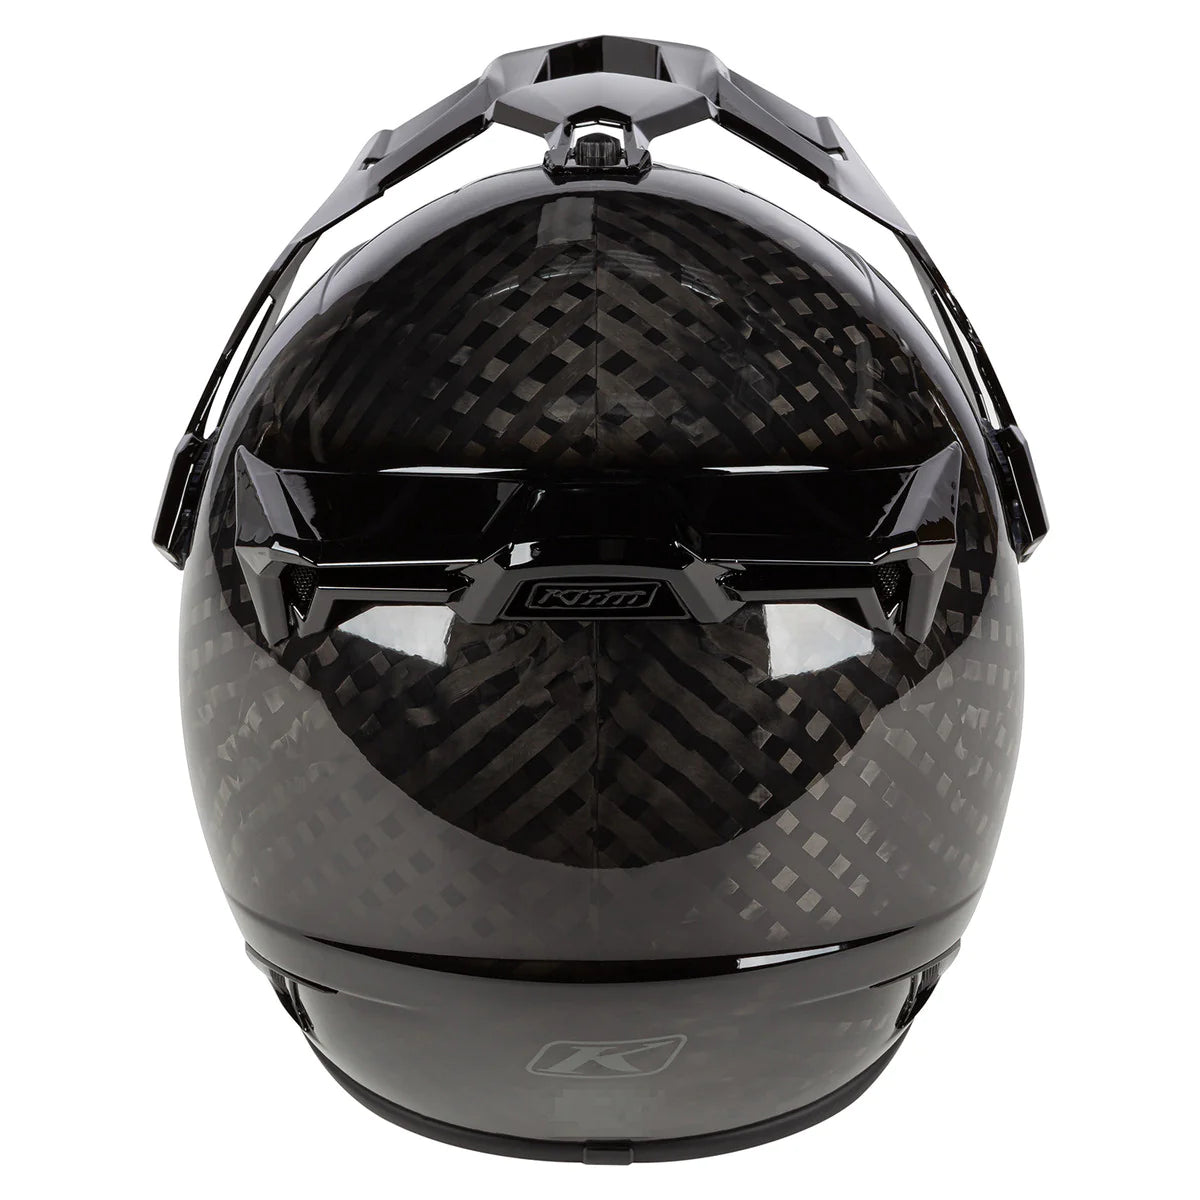 Klim Krios Karbon Adventure Gloss Karbon Black Helmet motorcycle rear view